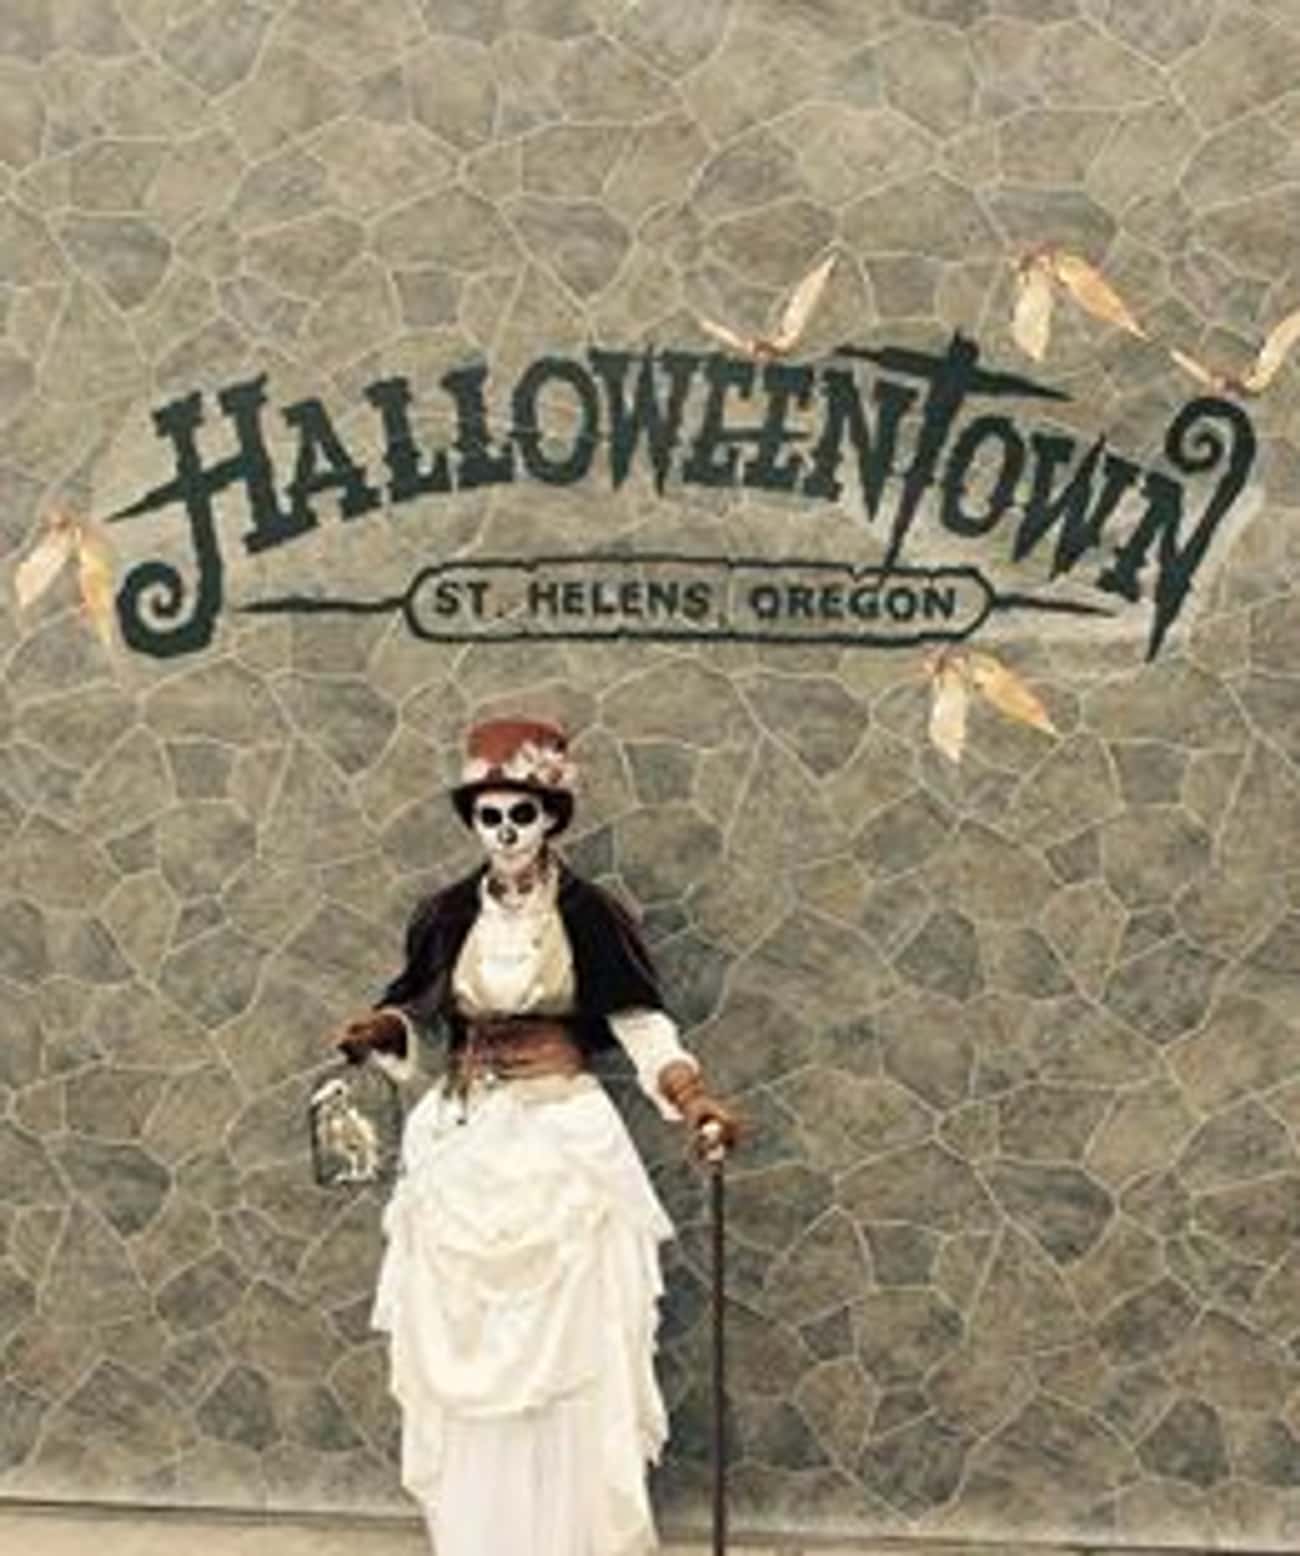 Halloweentown In St. Helens, OR